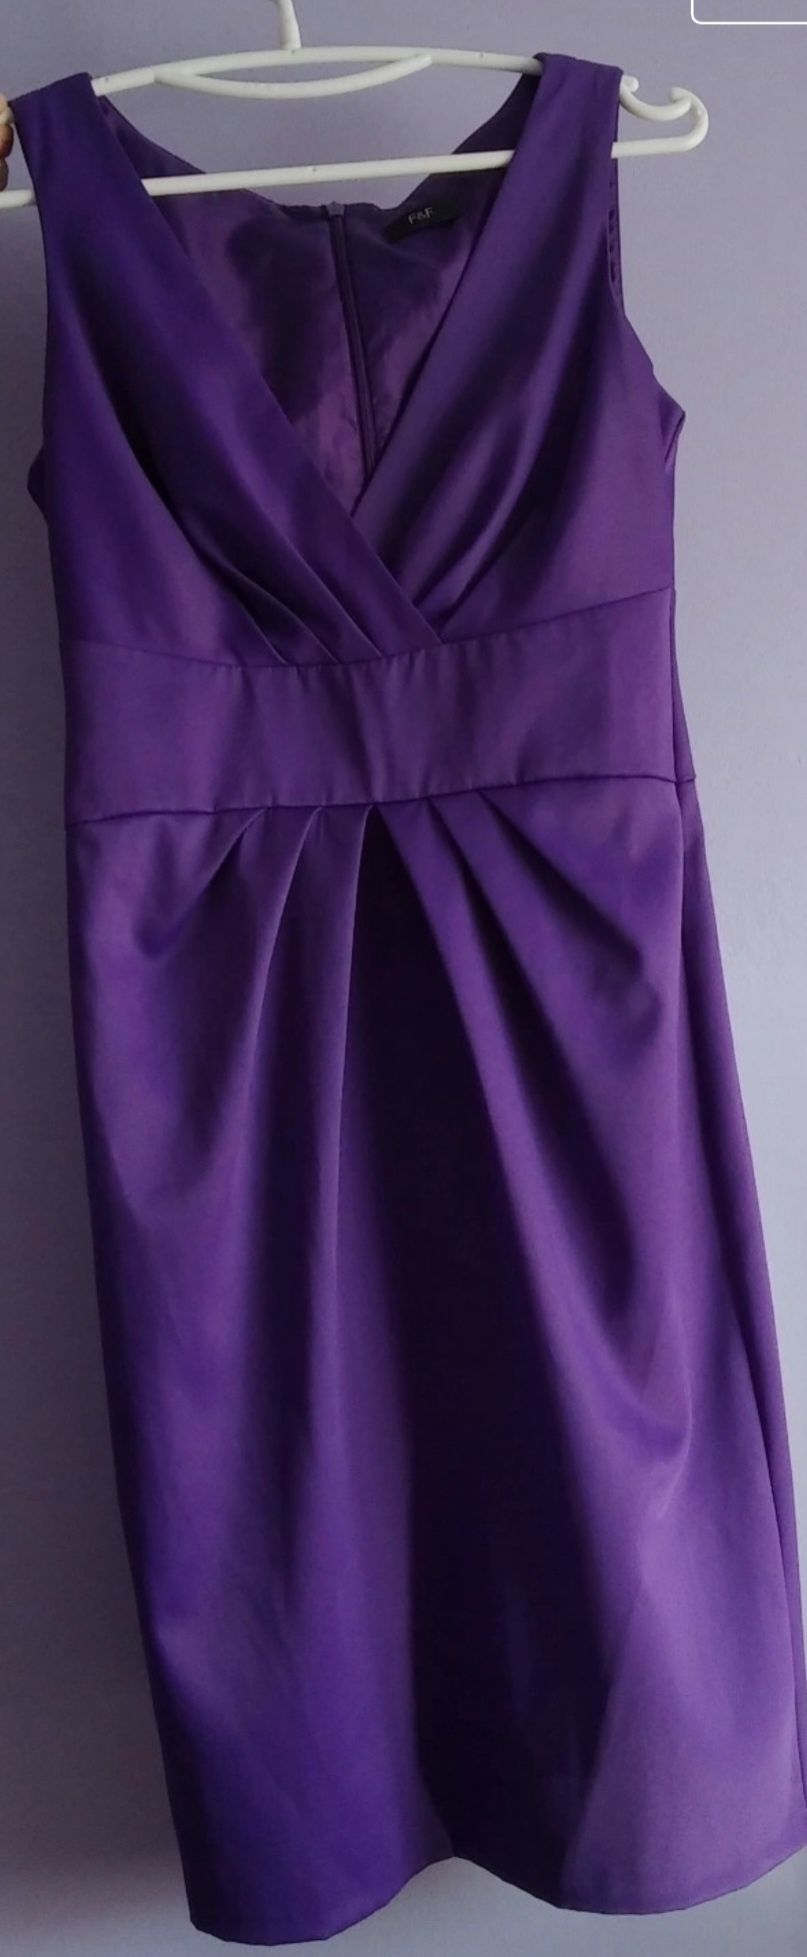 Śliczna fioletowa sukienka rozmiar 8